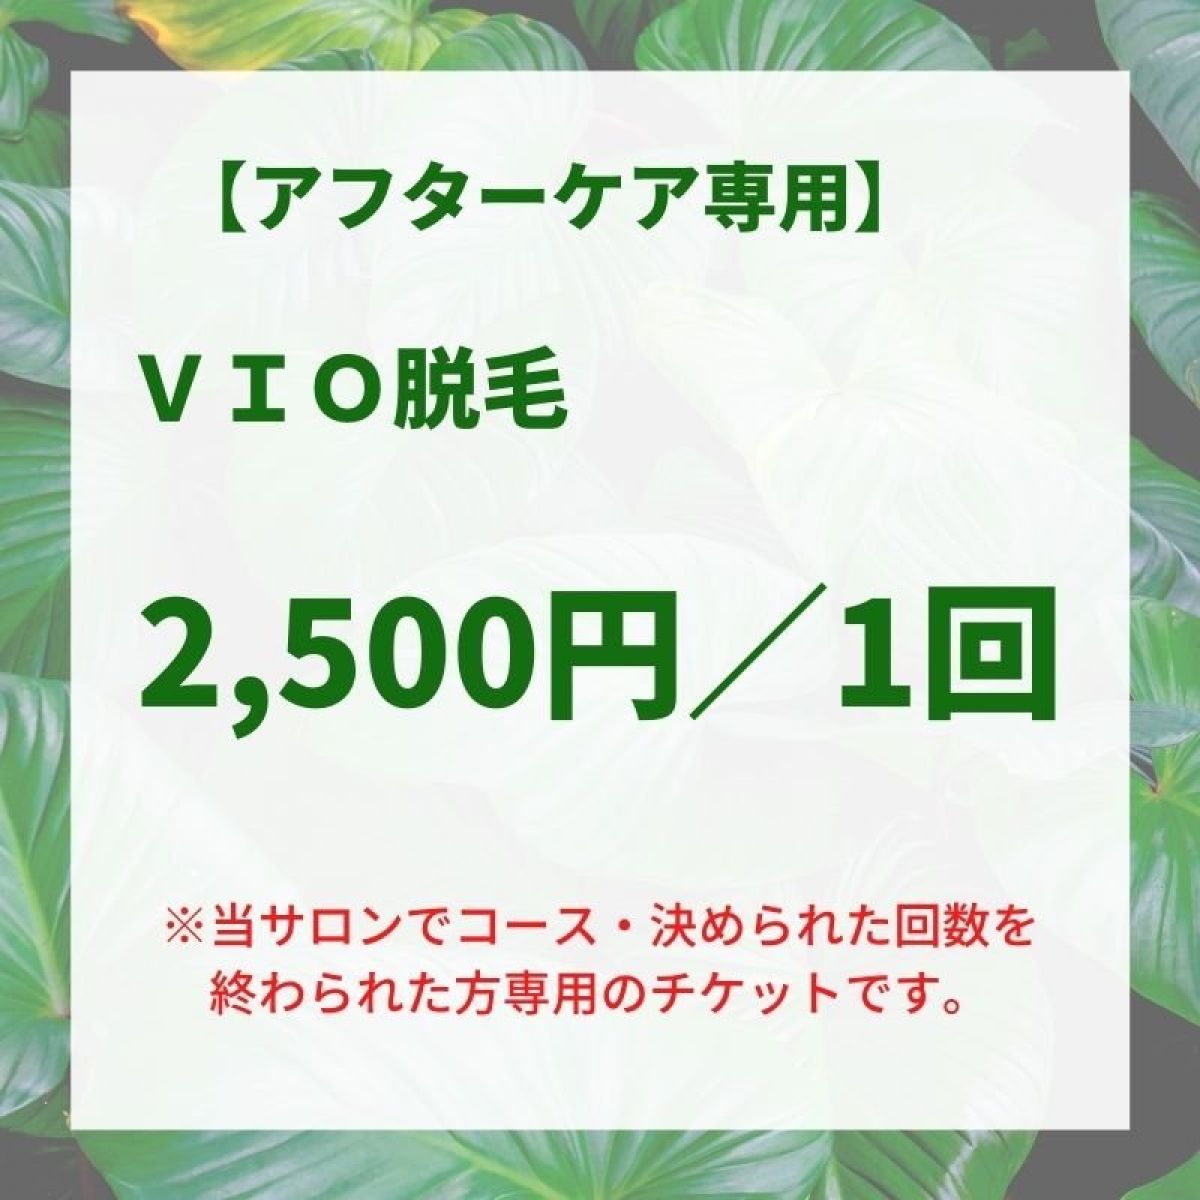 【専用】VIOアフター2,500円/1回